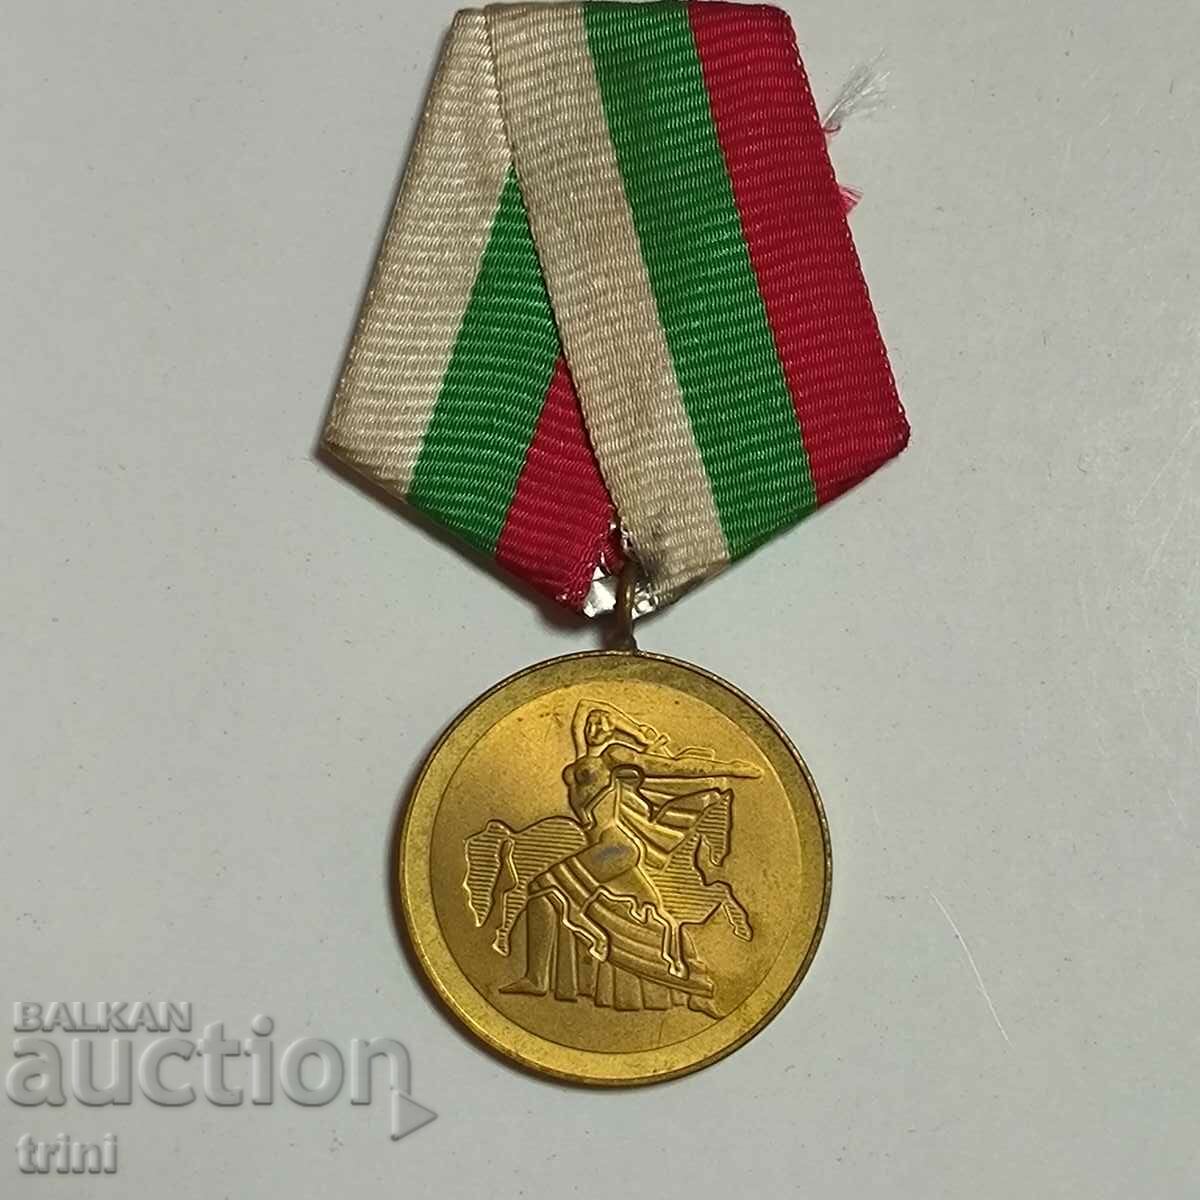 Μετάλλιο "1300 χρόνια Βουλγαρίας" 1981